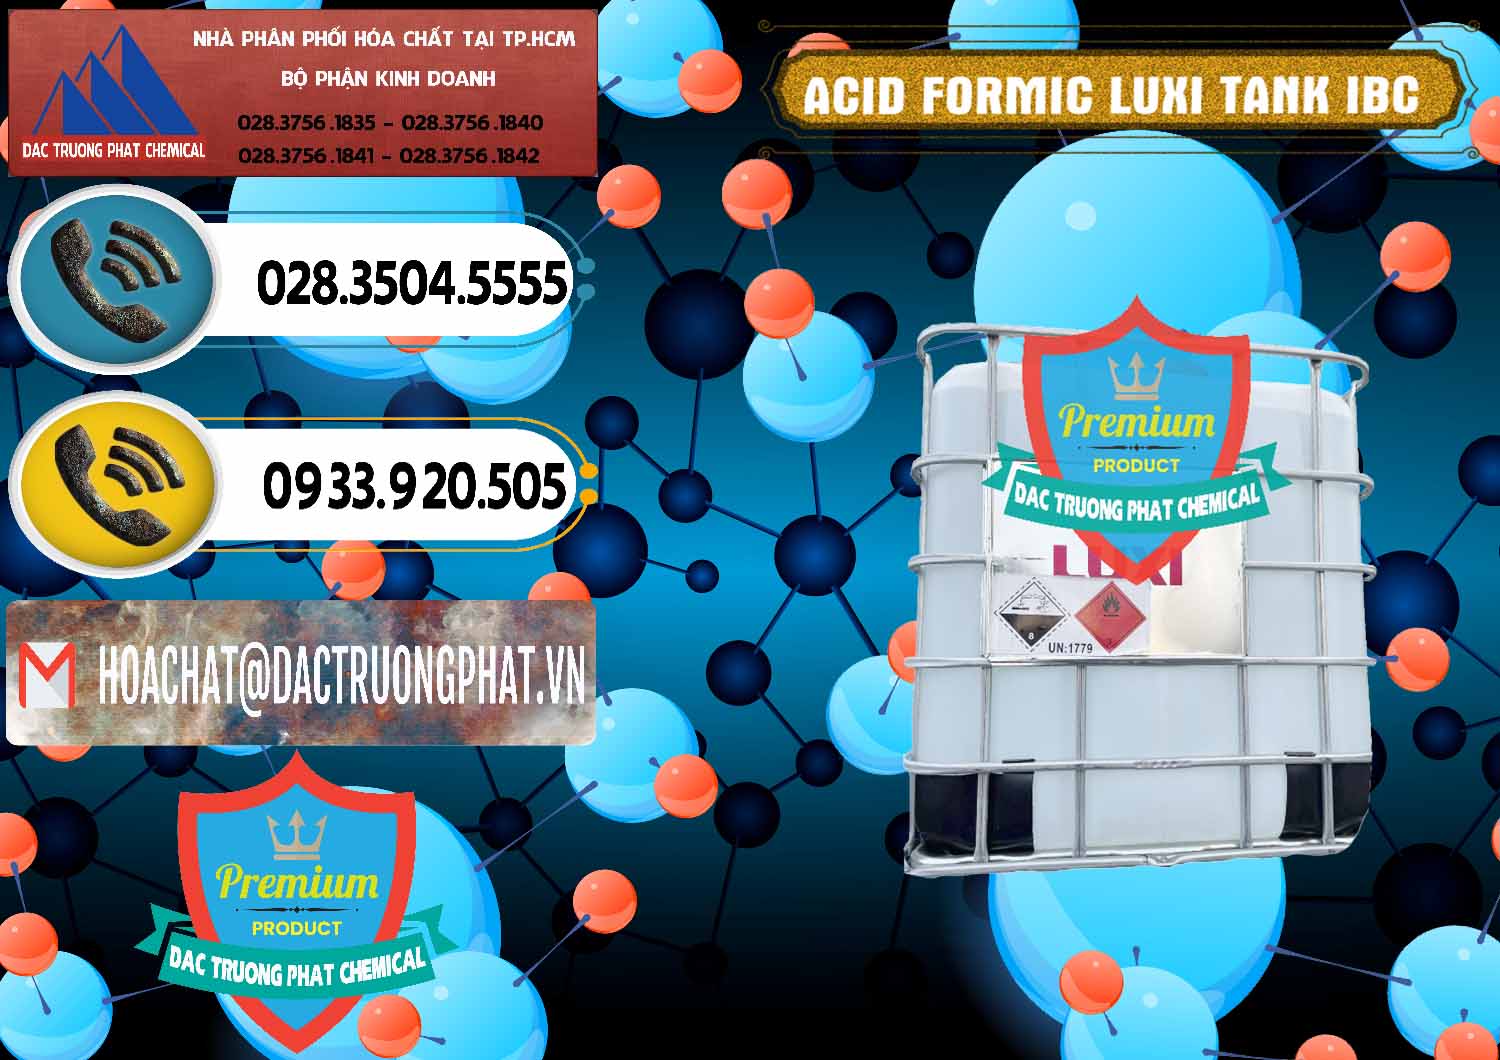 Cty chuyên bán & cung cấp Acid Formic - Acid Formic Tank - Bồn IBC Luxi Trung Quốc China - 0400 - Công ty phân phối ( cung cấp ) hóa chất tại TP.HCM - hoachatdetnhuom.vn